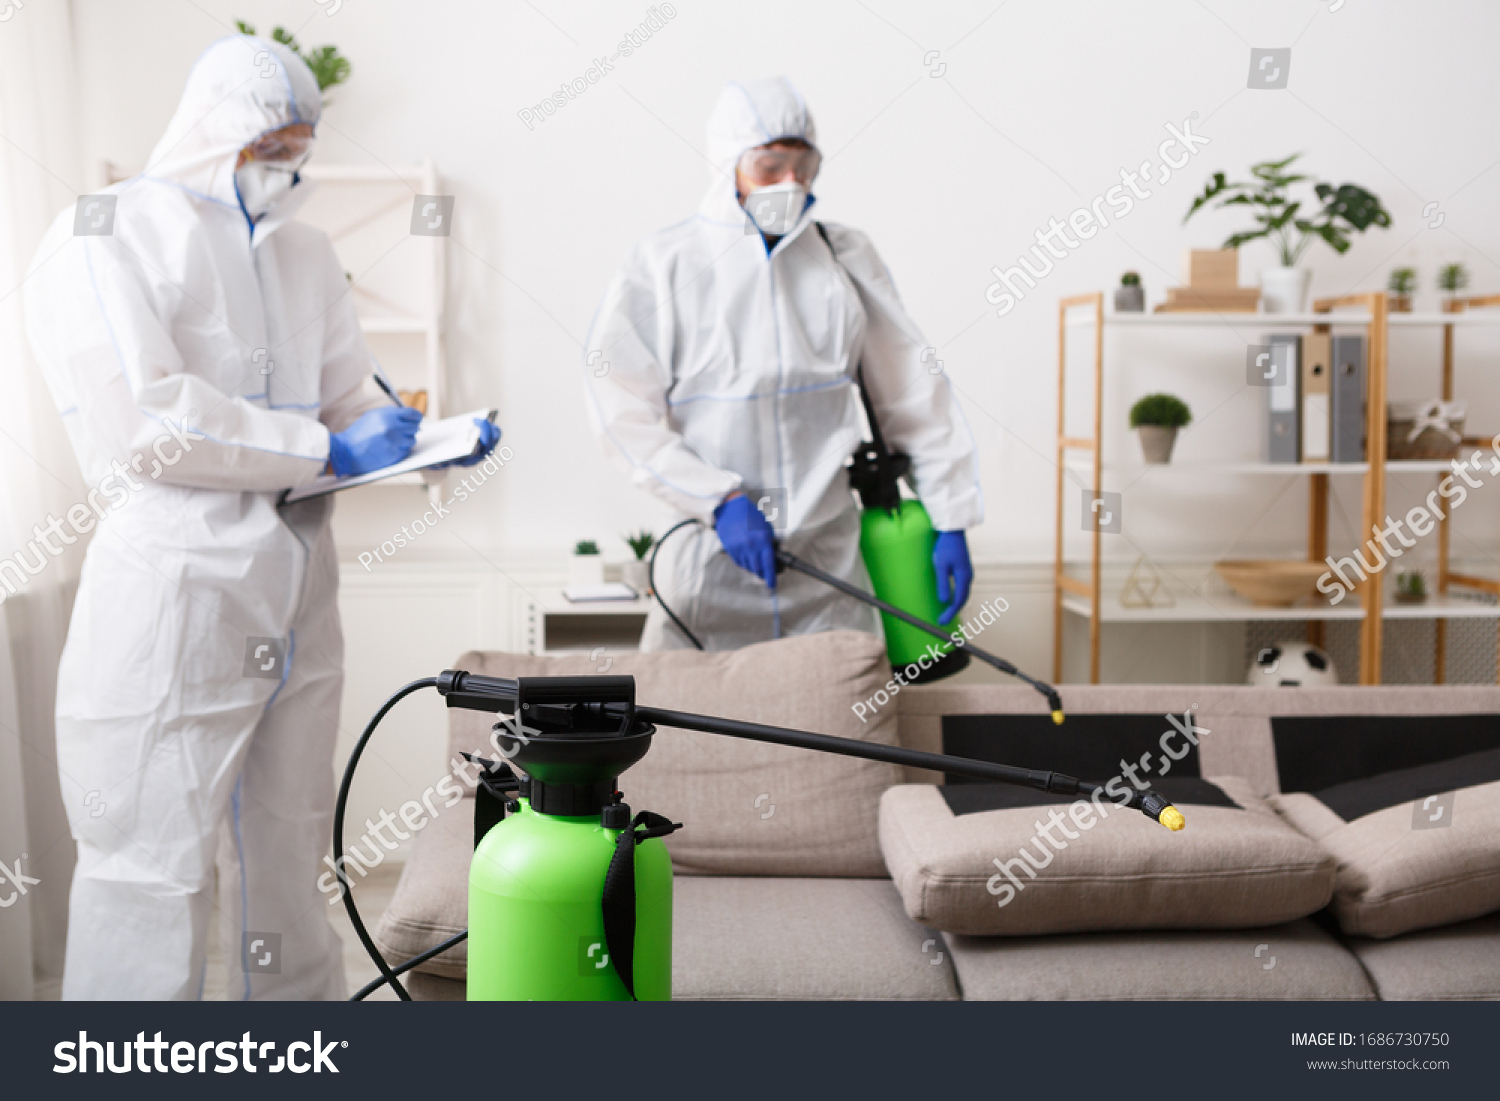 Anti coronavirus disinfection. Men in hazmat suits cleaning home, epidemic, quarantine #1686730750